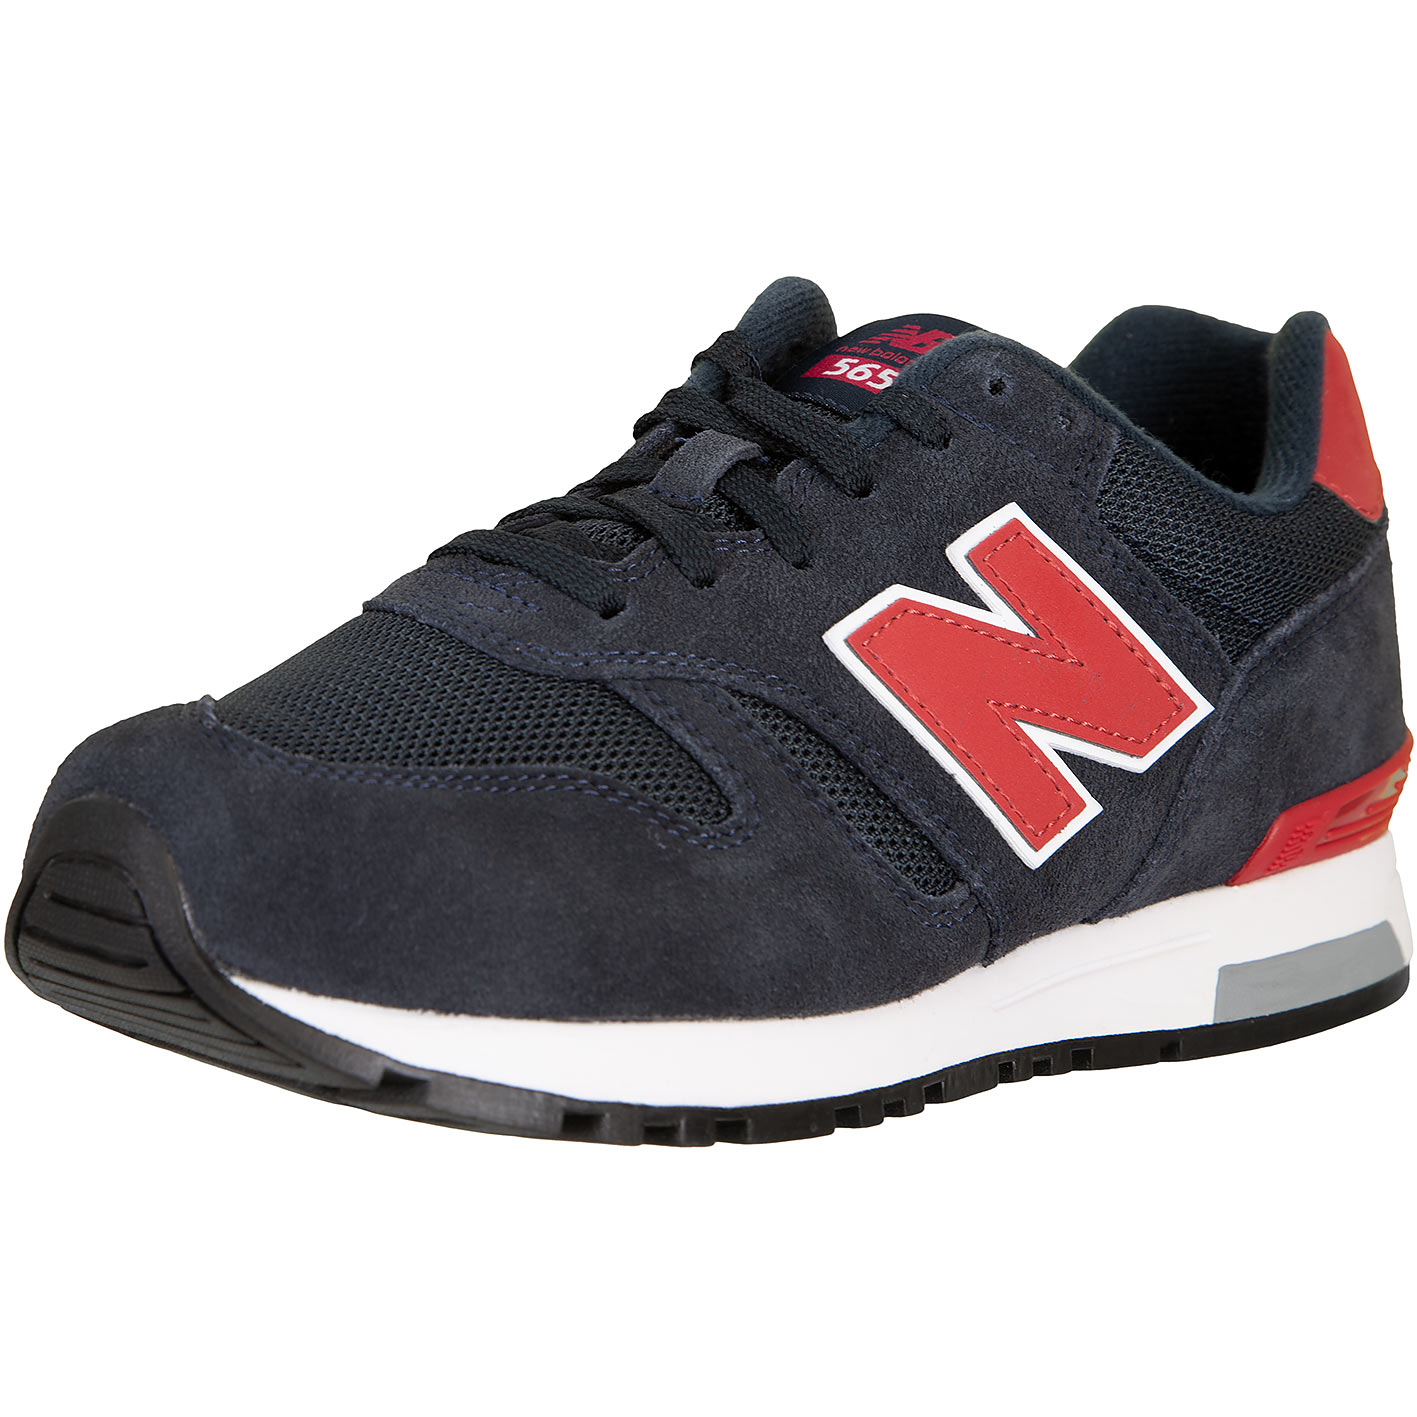 ☆ New Balance 565 Sneaker Schuhe navy - hier bestellen!